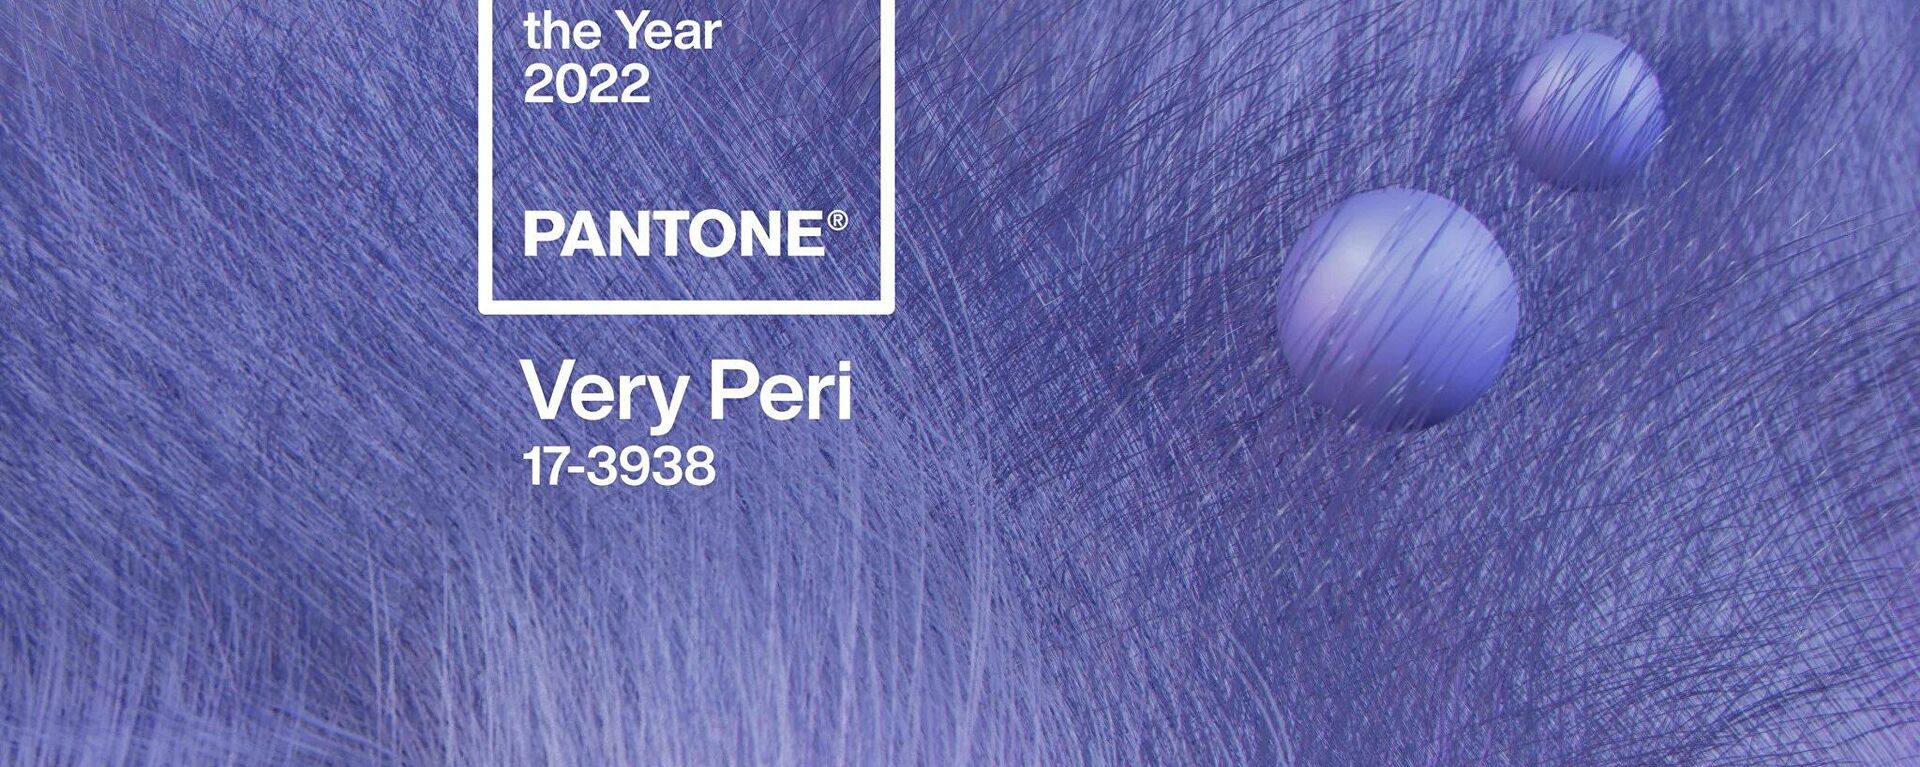 Küresel renk otoritesi Pantone her yıl olduğu gibi yeni yılın da rengini belirledi. Pantone, bu yıl mevcut renkler arasından bir tonu seçmek yerine ilk kez sıfırdan renk üretmeyi tercih ederek 'Very Peri'yi 2022'nin rengi ilan etti. - Sputnik Türkiye, 1920, 09.12.2021